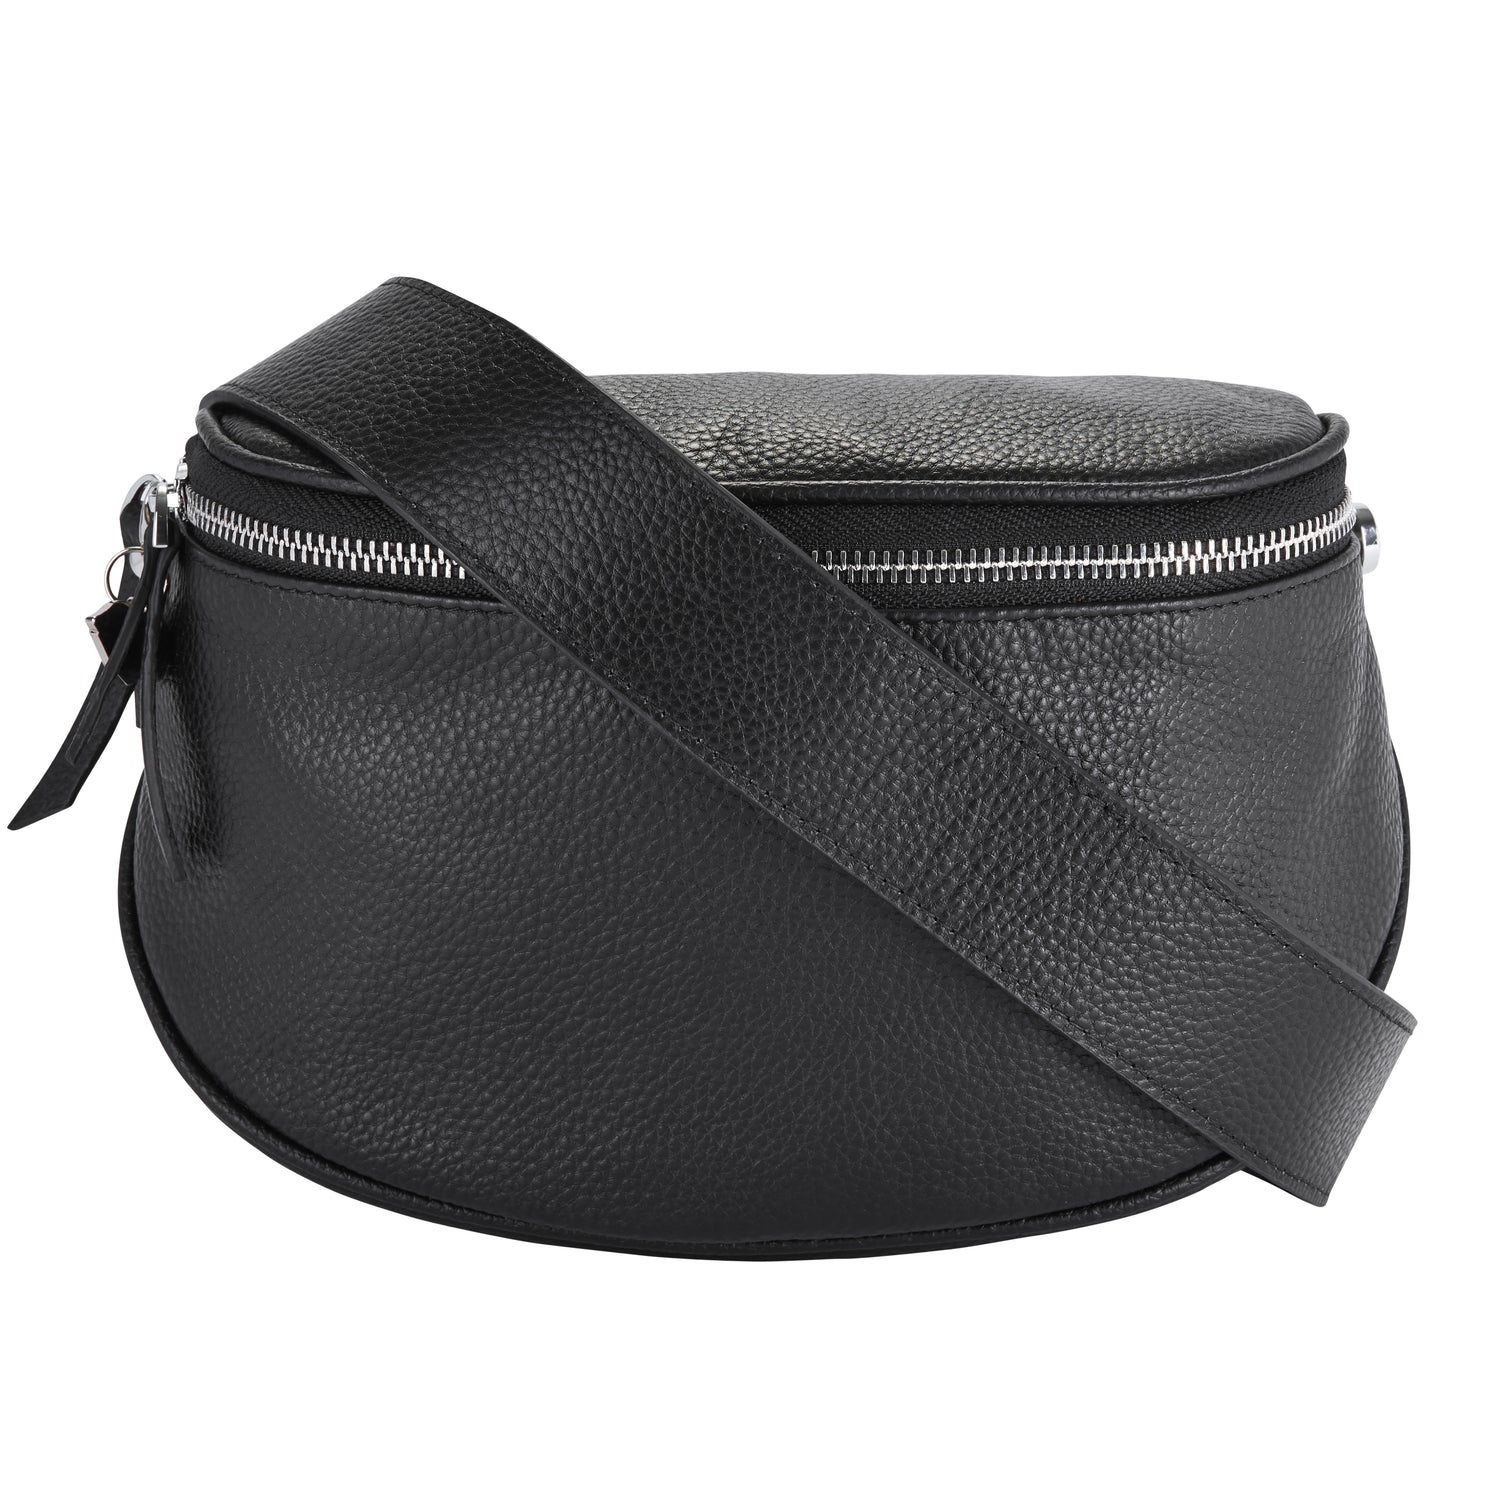 adjustable black leather bag strap